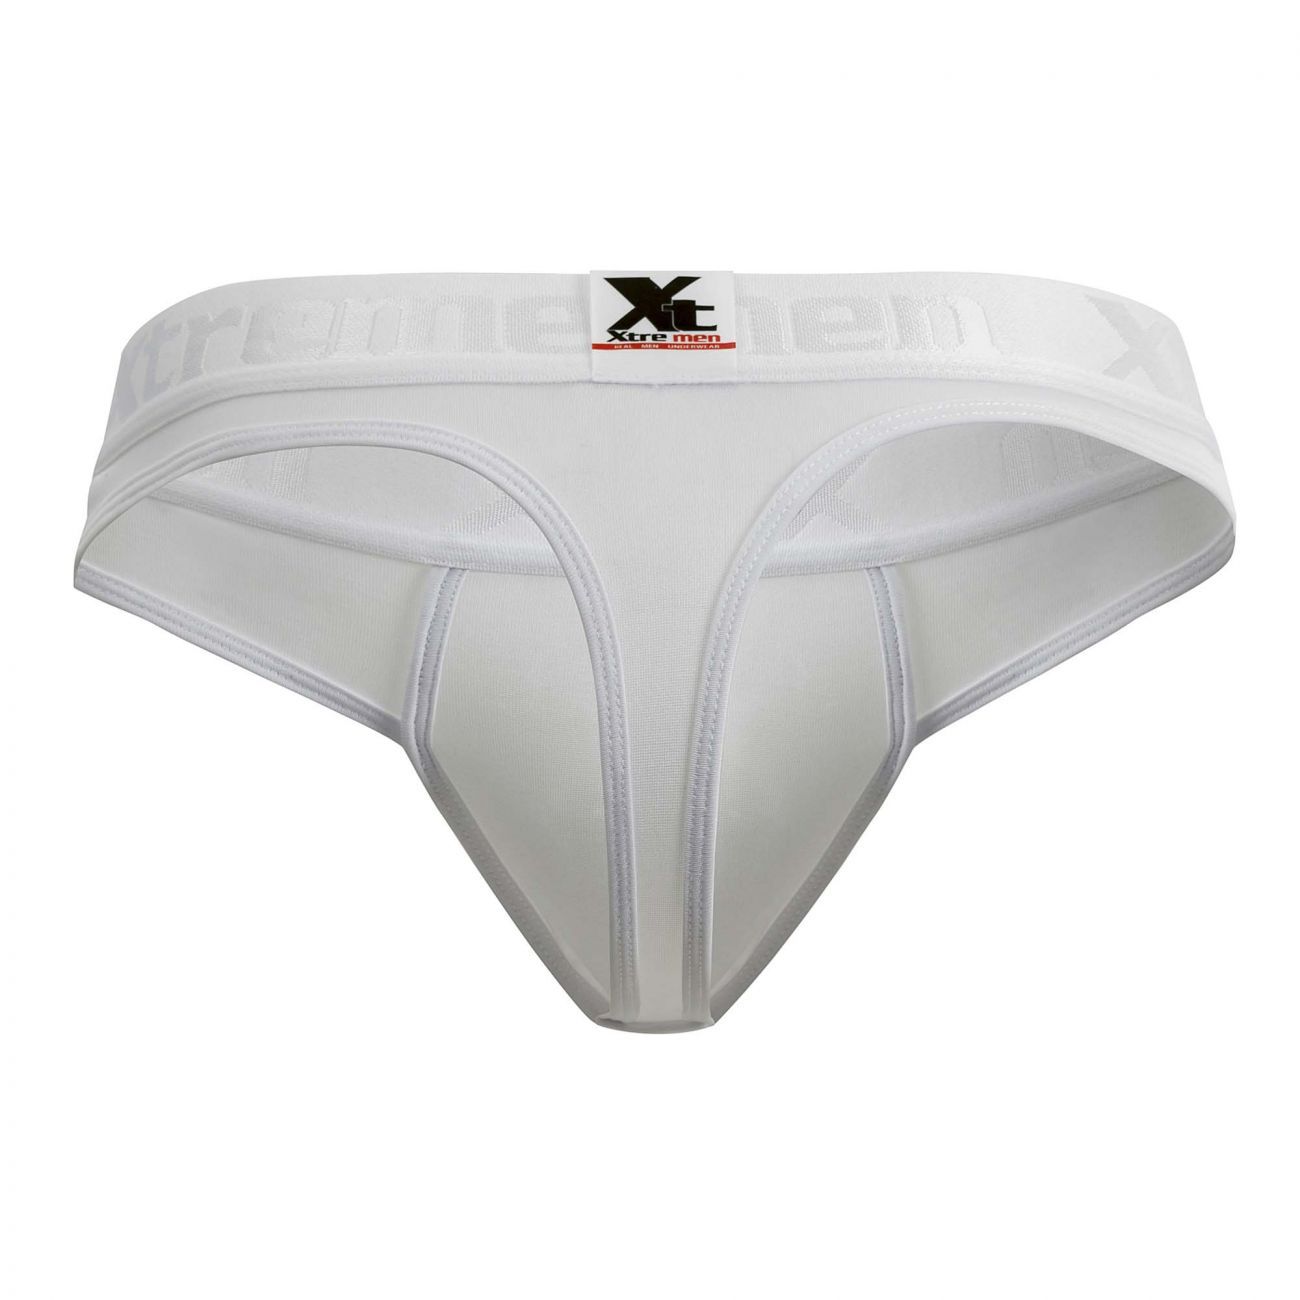 Xtremen 91031-3 3PK Piping Thongs White